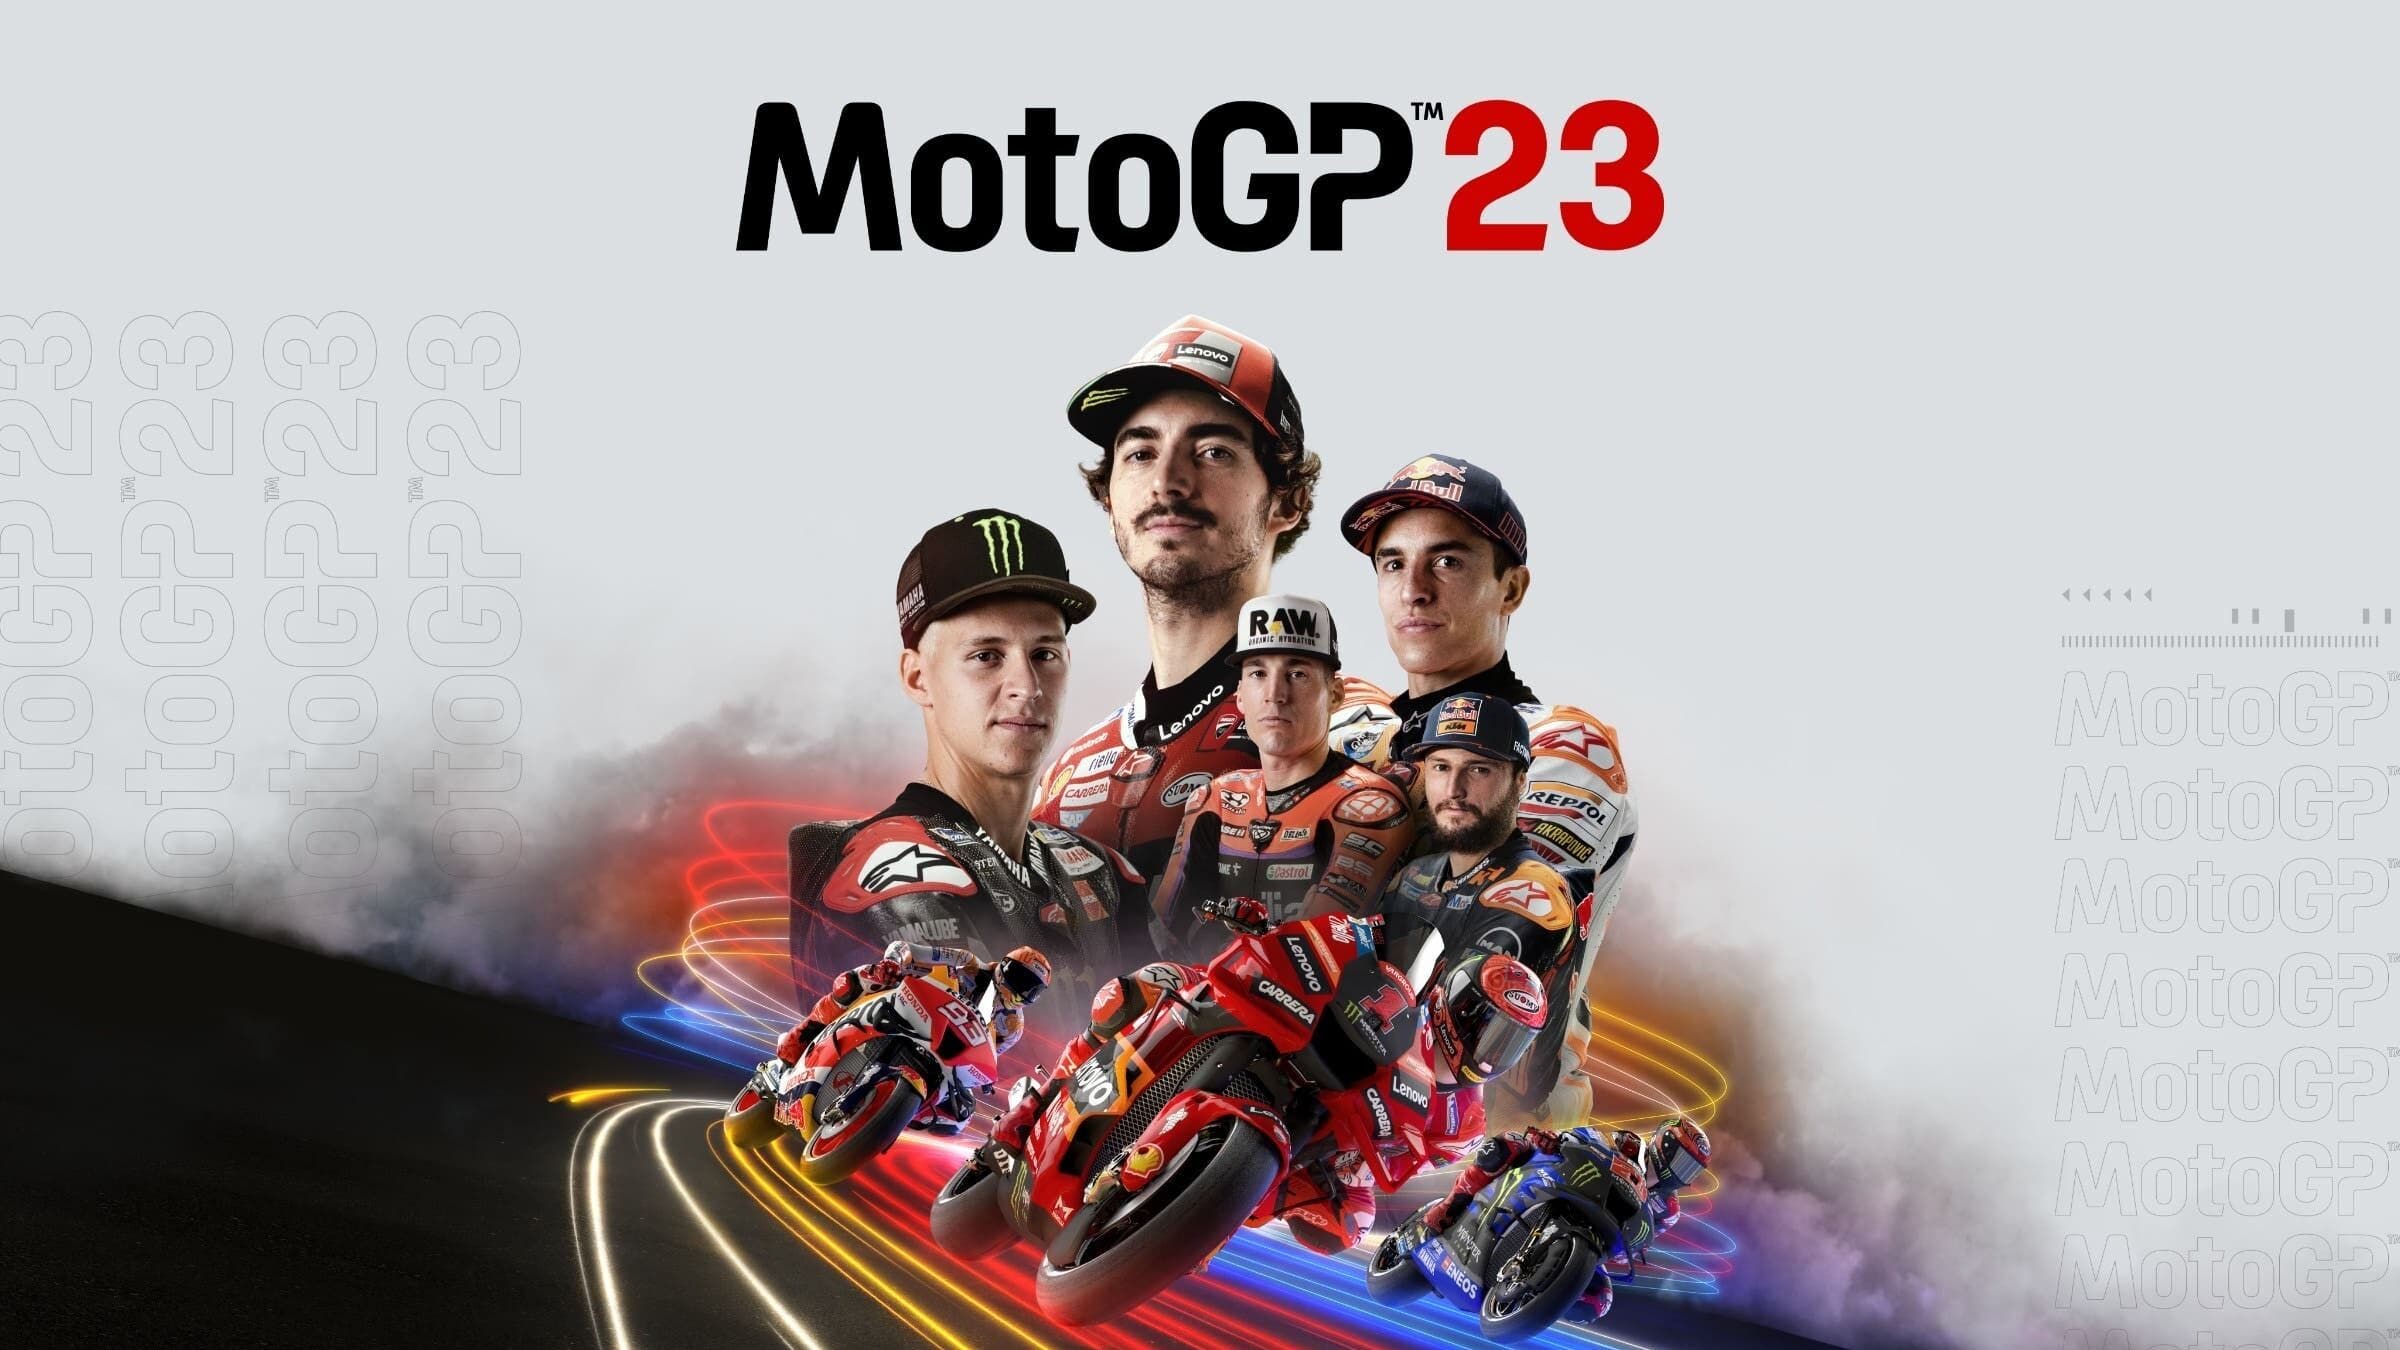 MotoGP 23 anunciado para Nintendo Switch: Fecha, detalles y tráiler